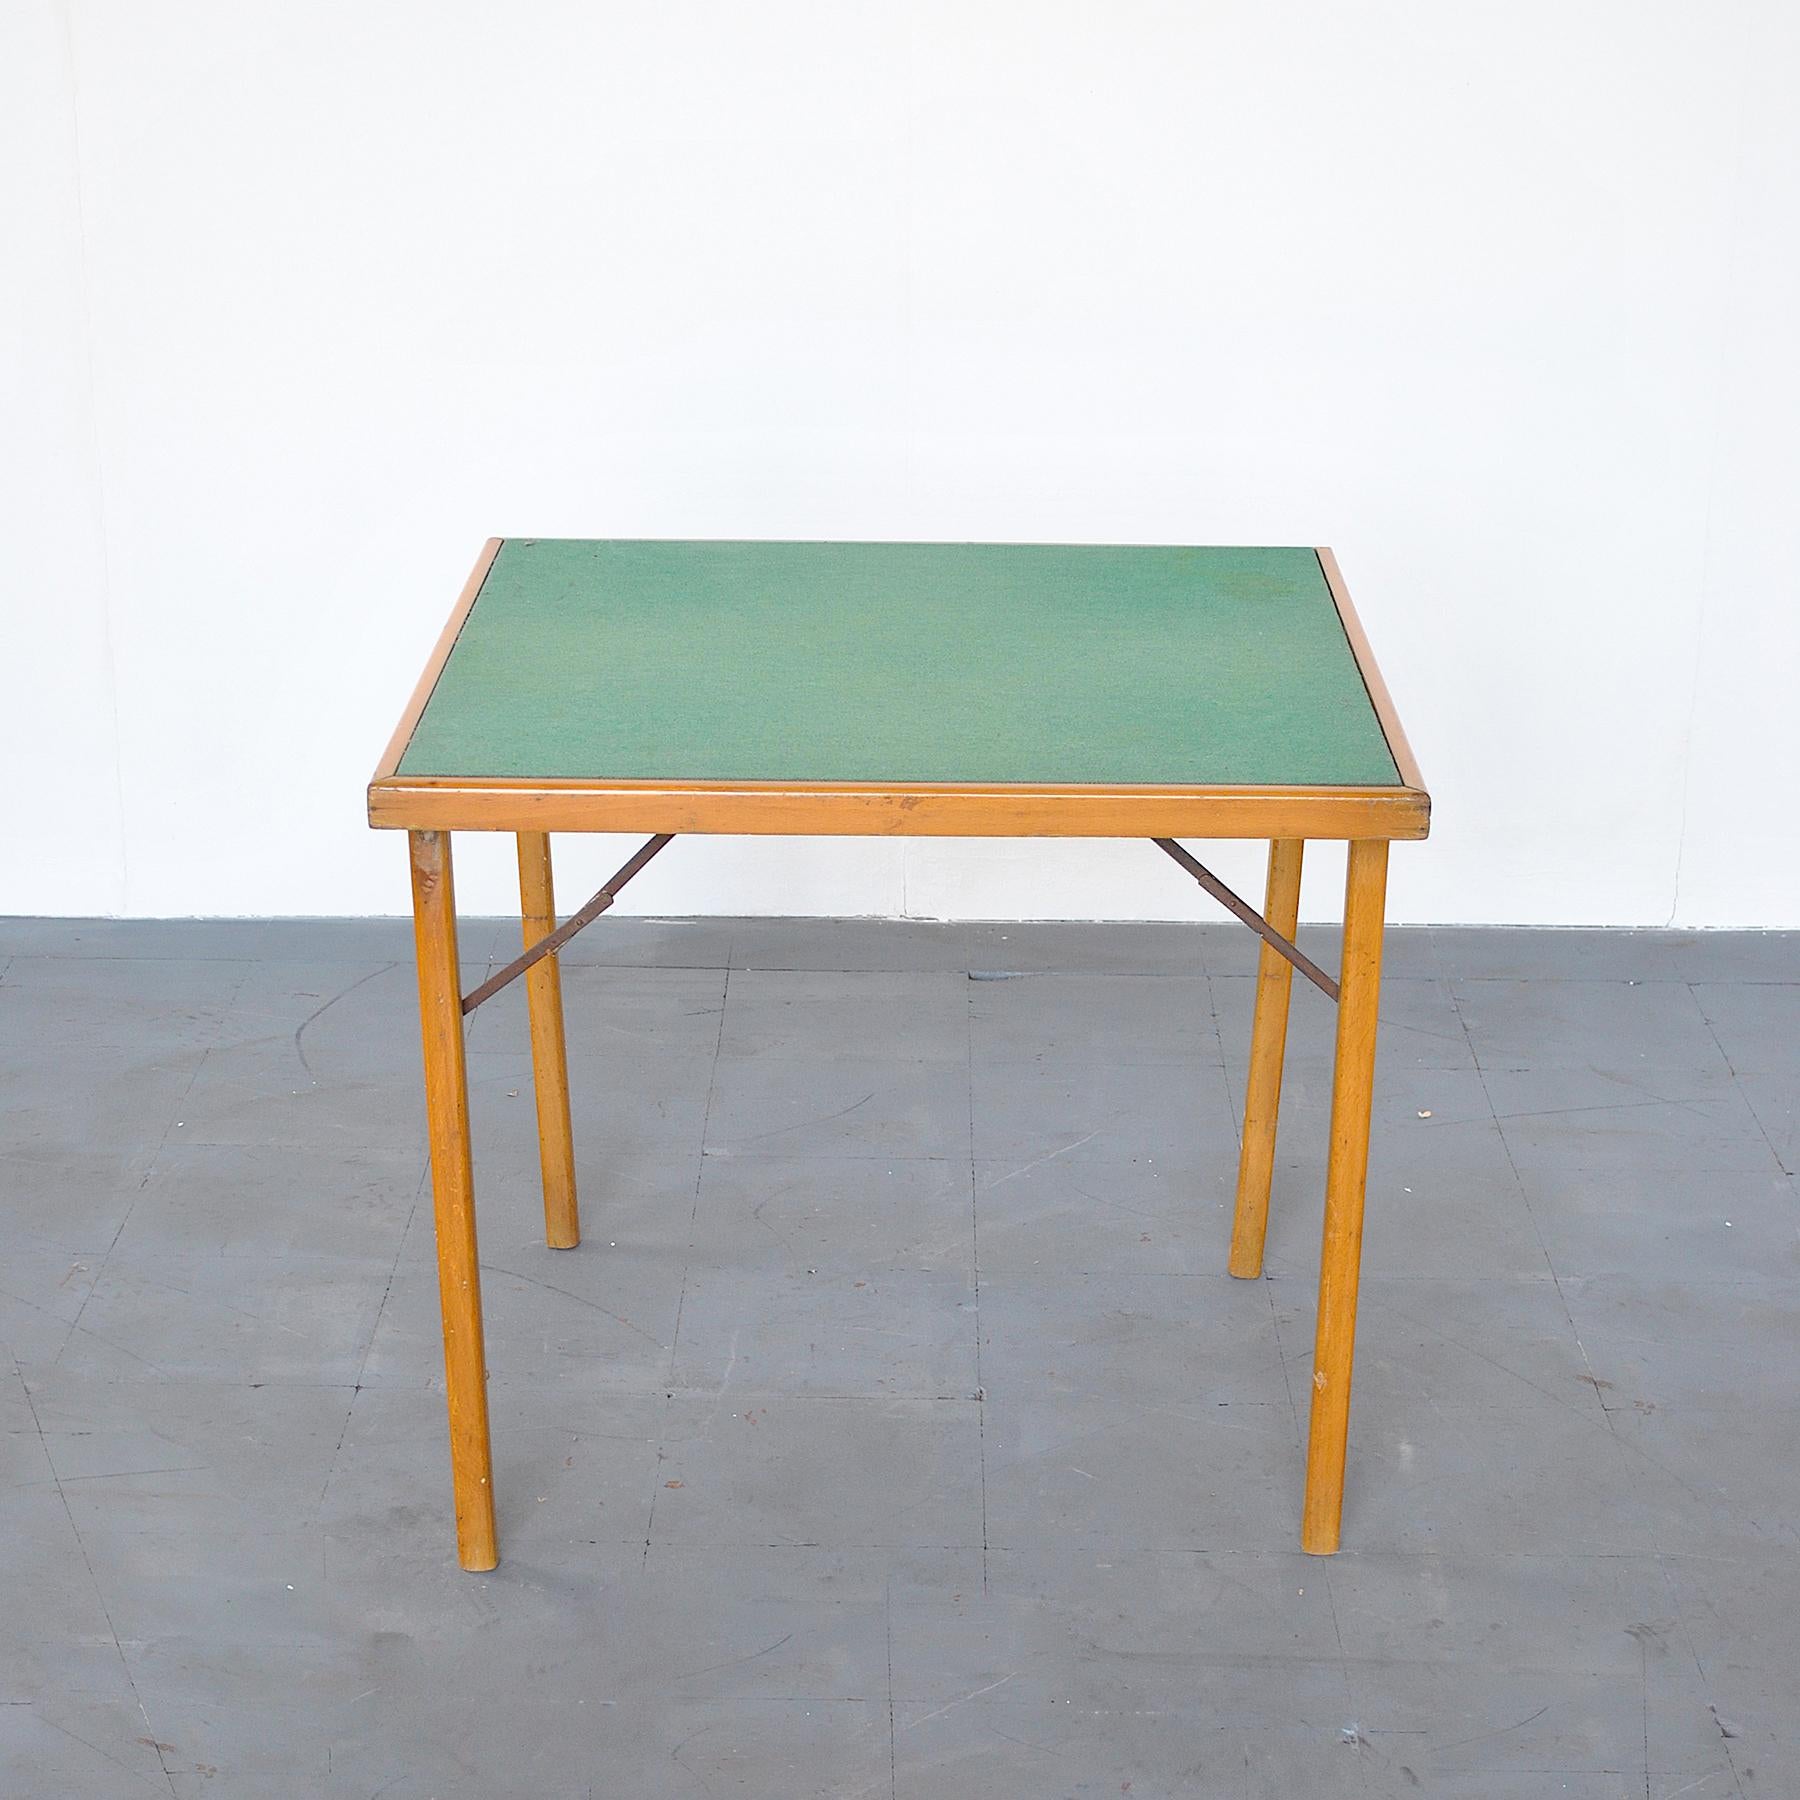 Gros plan sur une table de jeu en bois avec un tissu vert sur le sol.